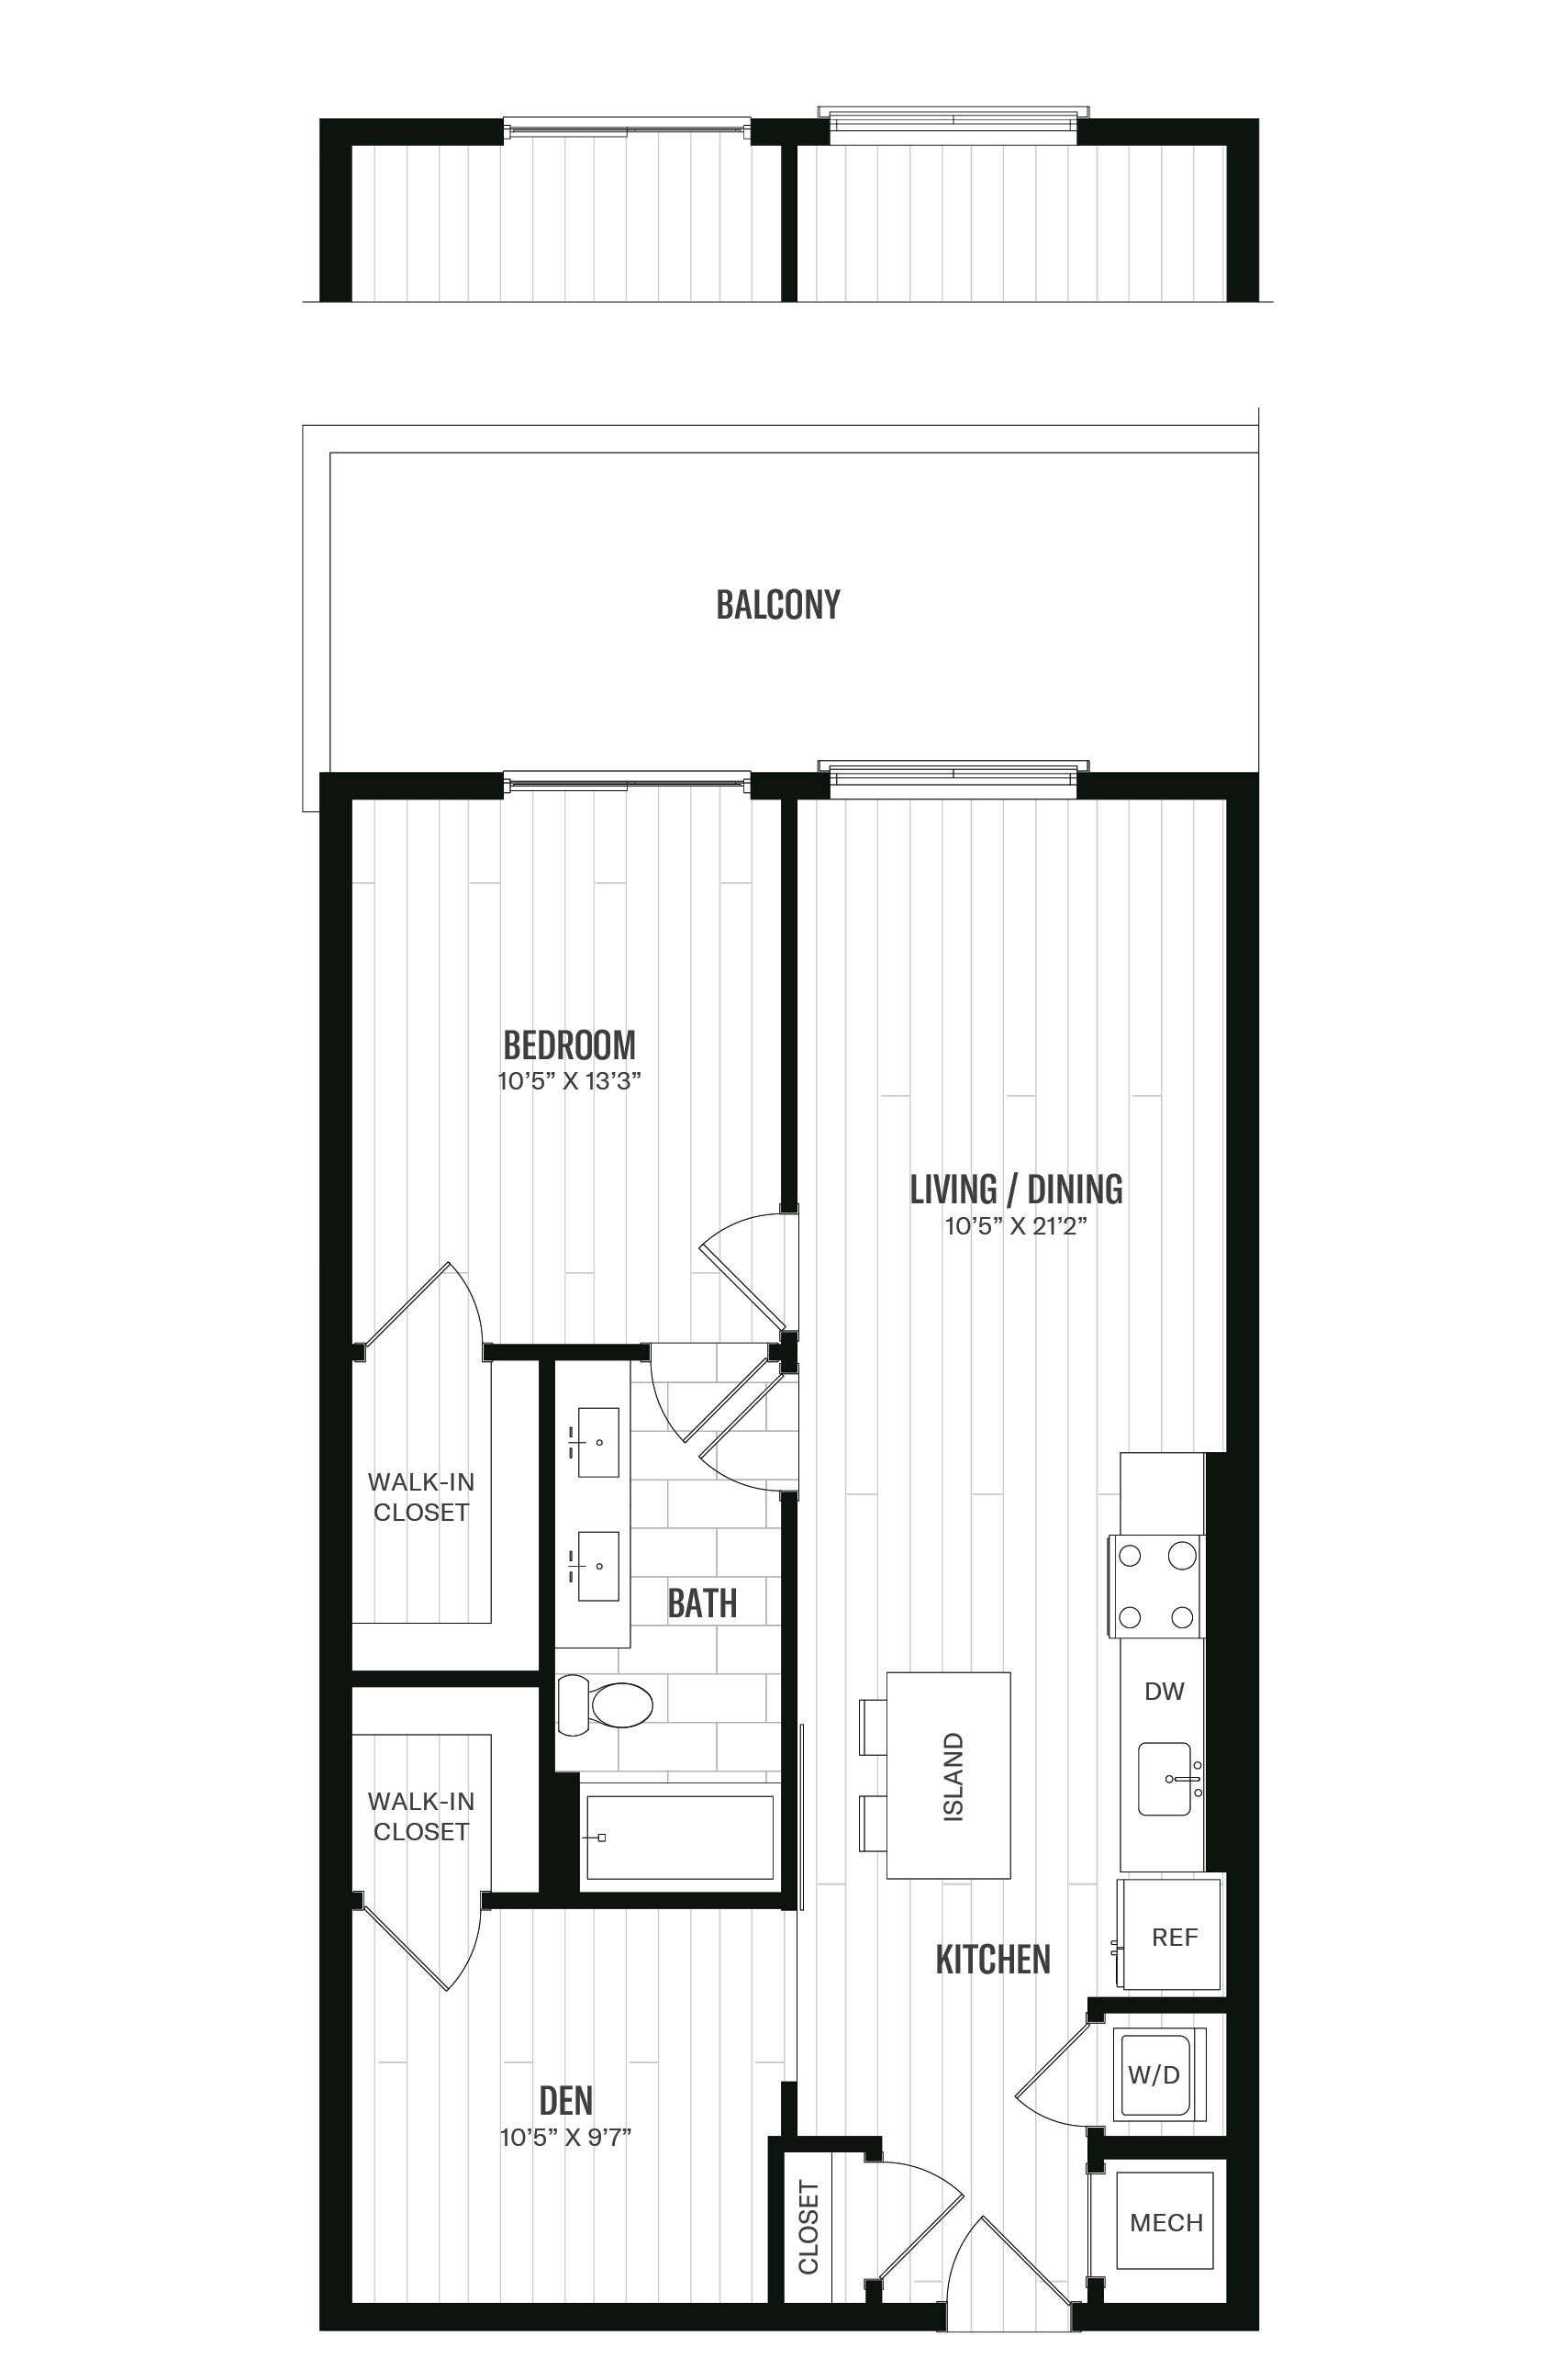 Floorplan image of unit 243